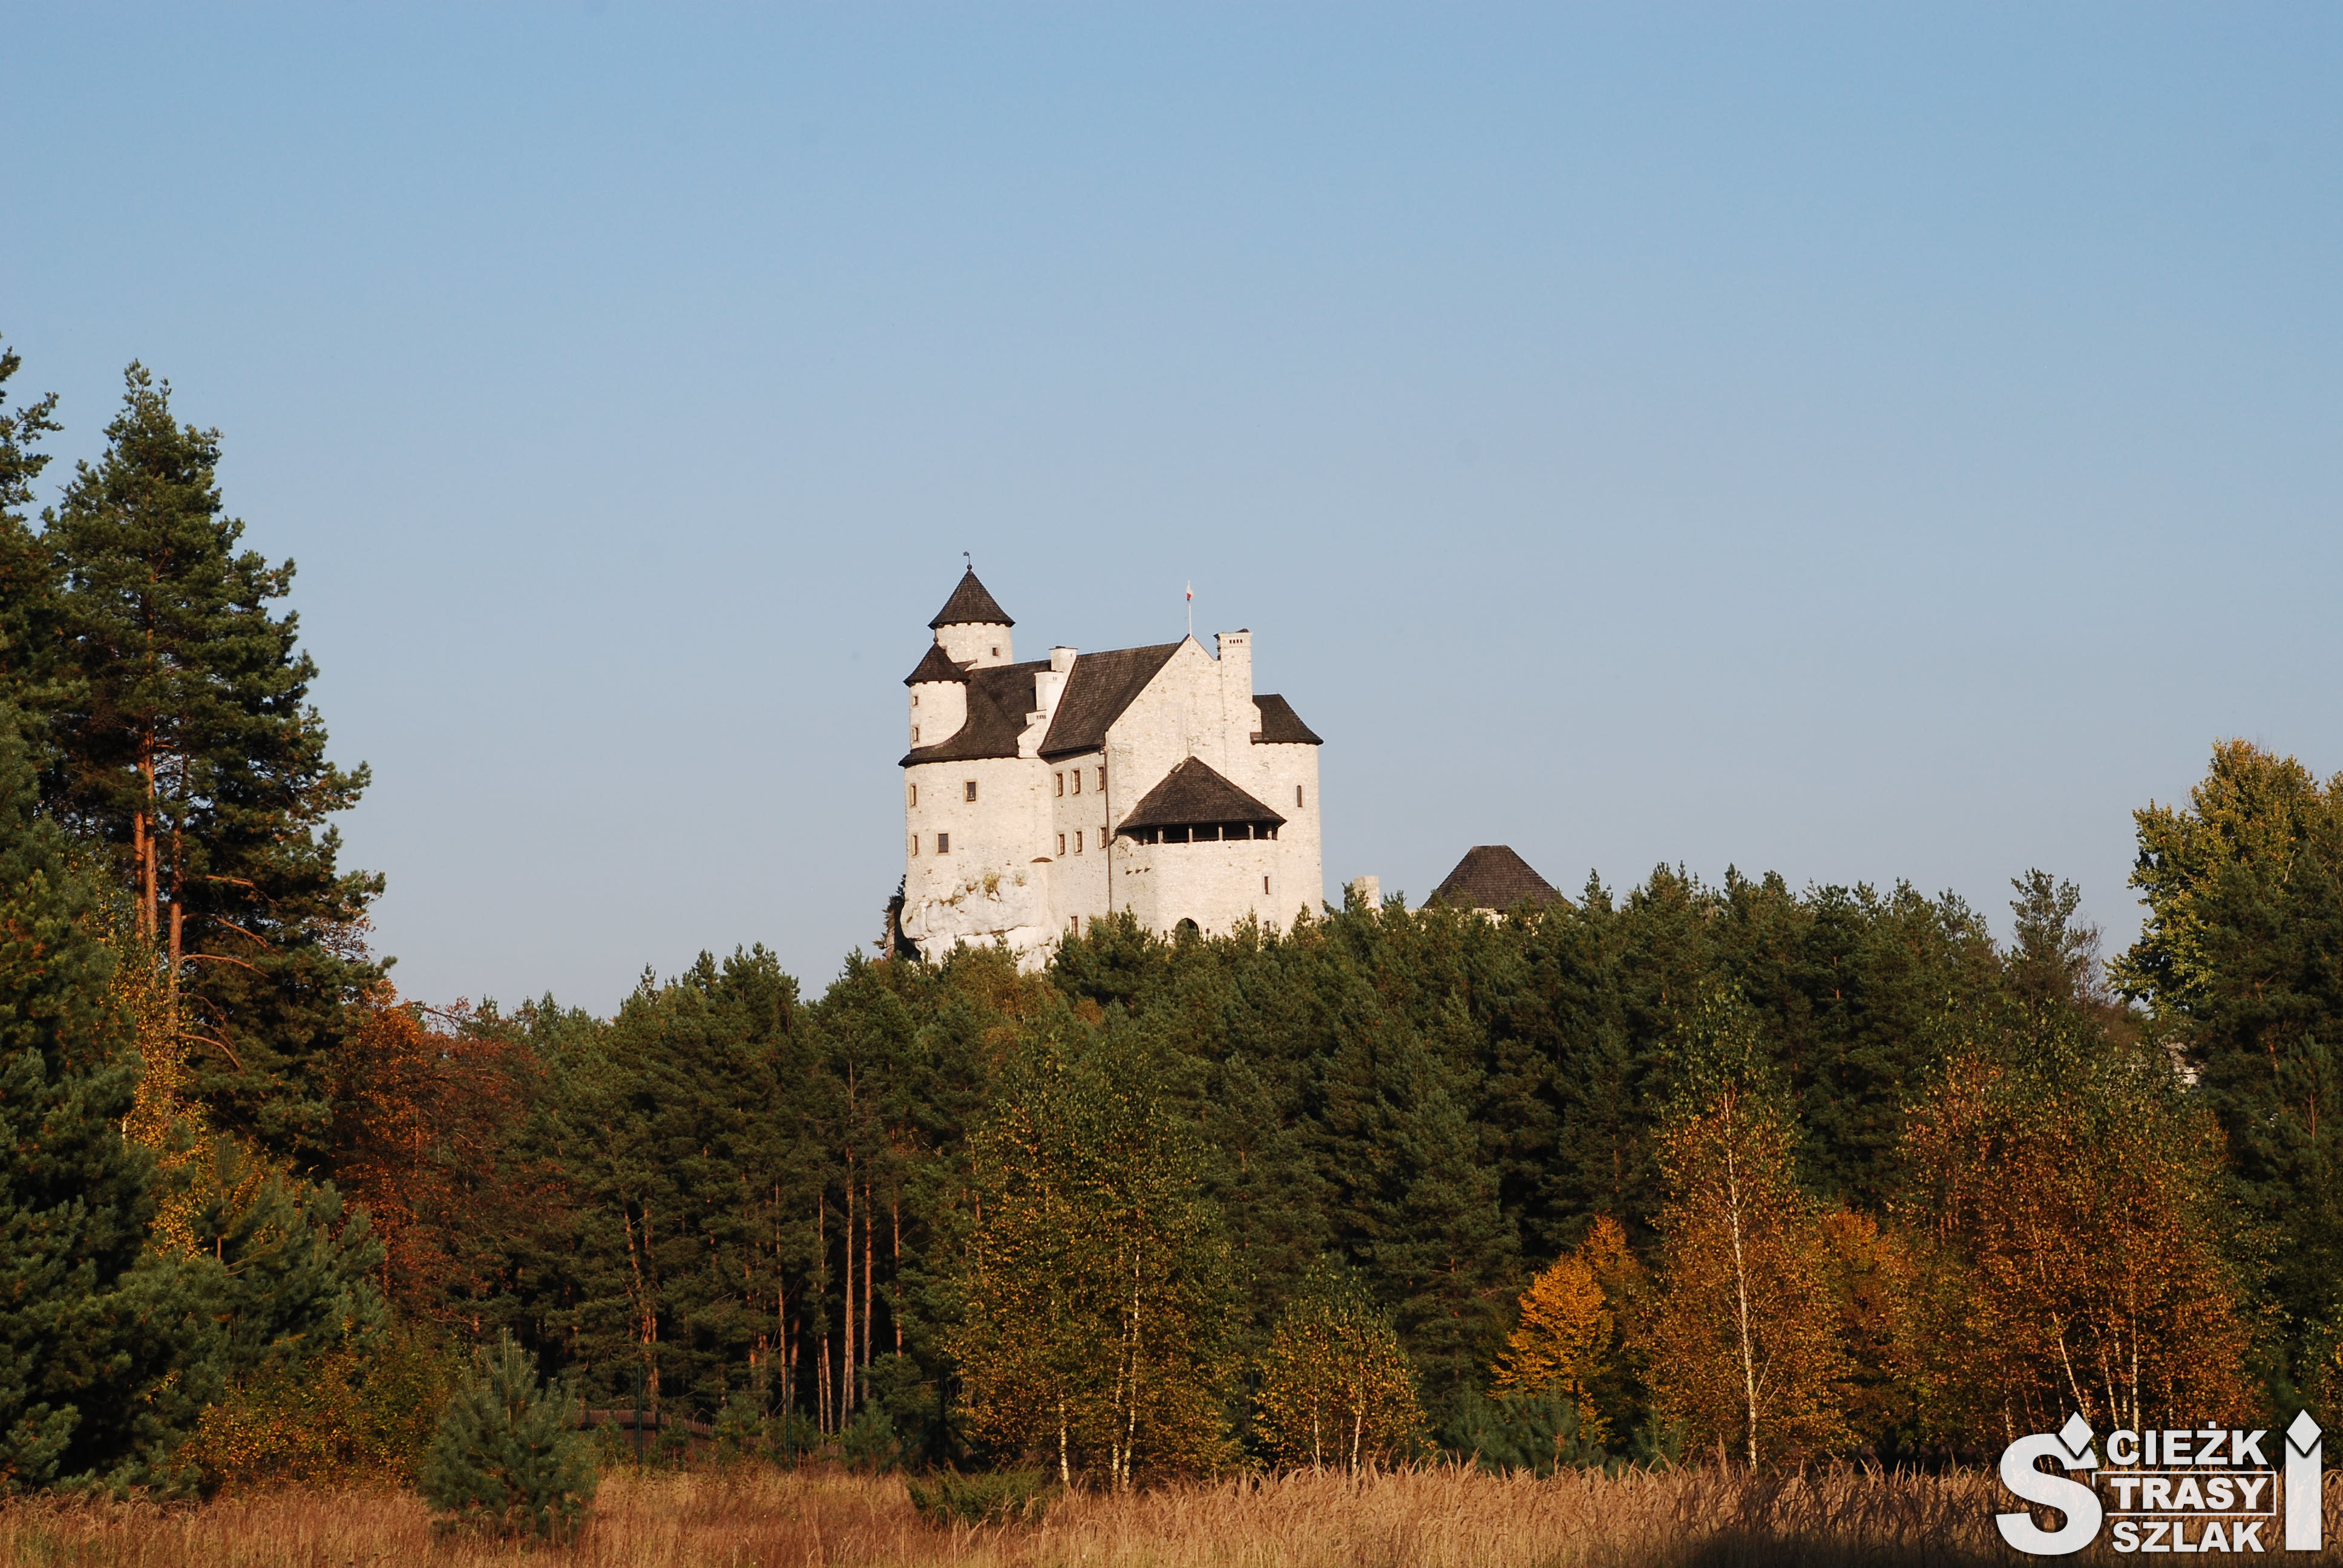 Zamek w Bobolicach na wzgórzu porośniętym drzewami w słoneczny jesienny dzień na Śląsku